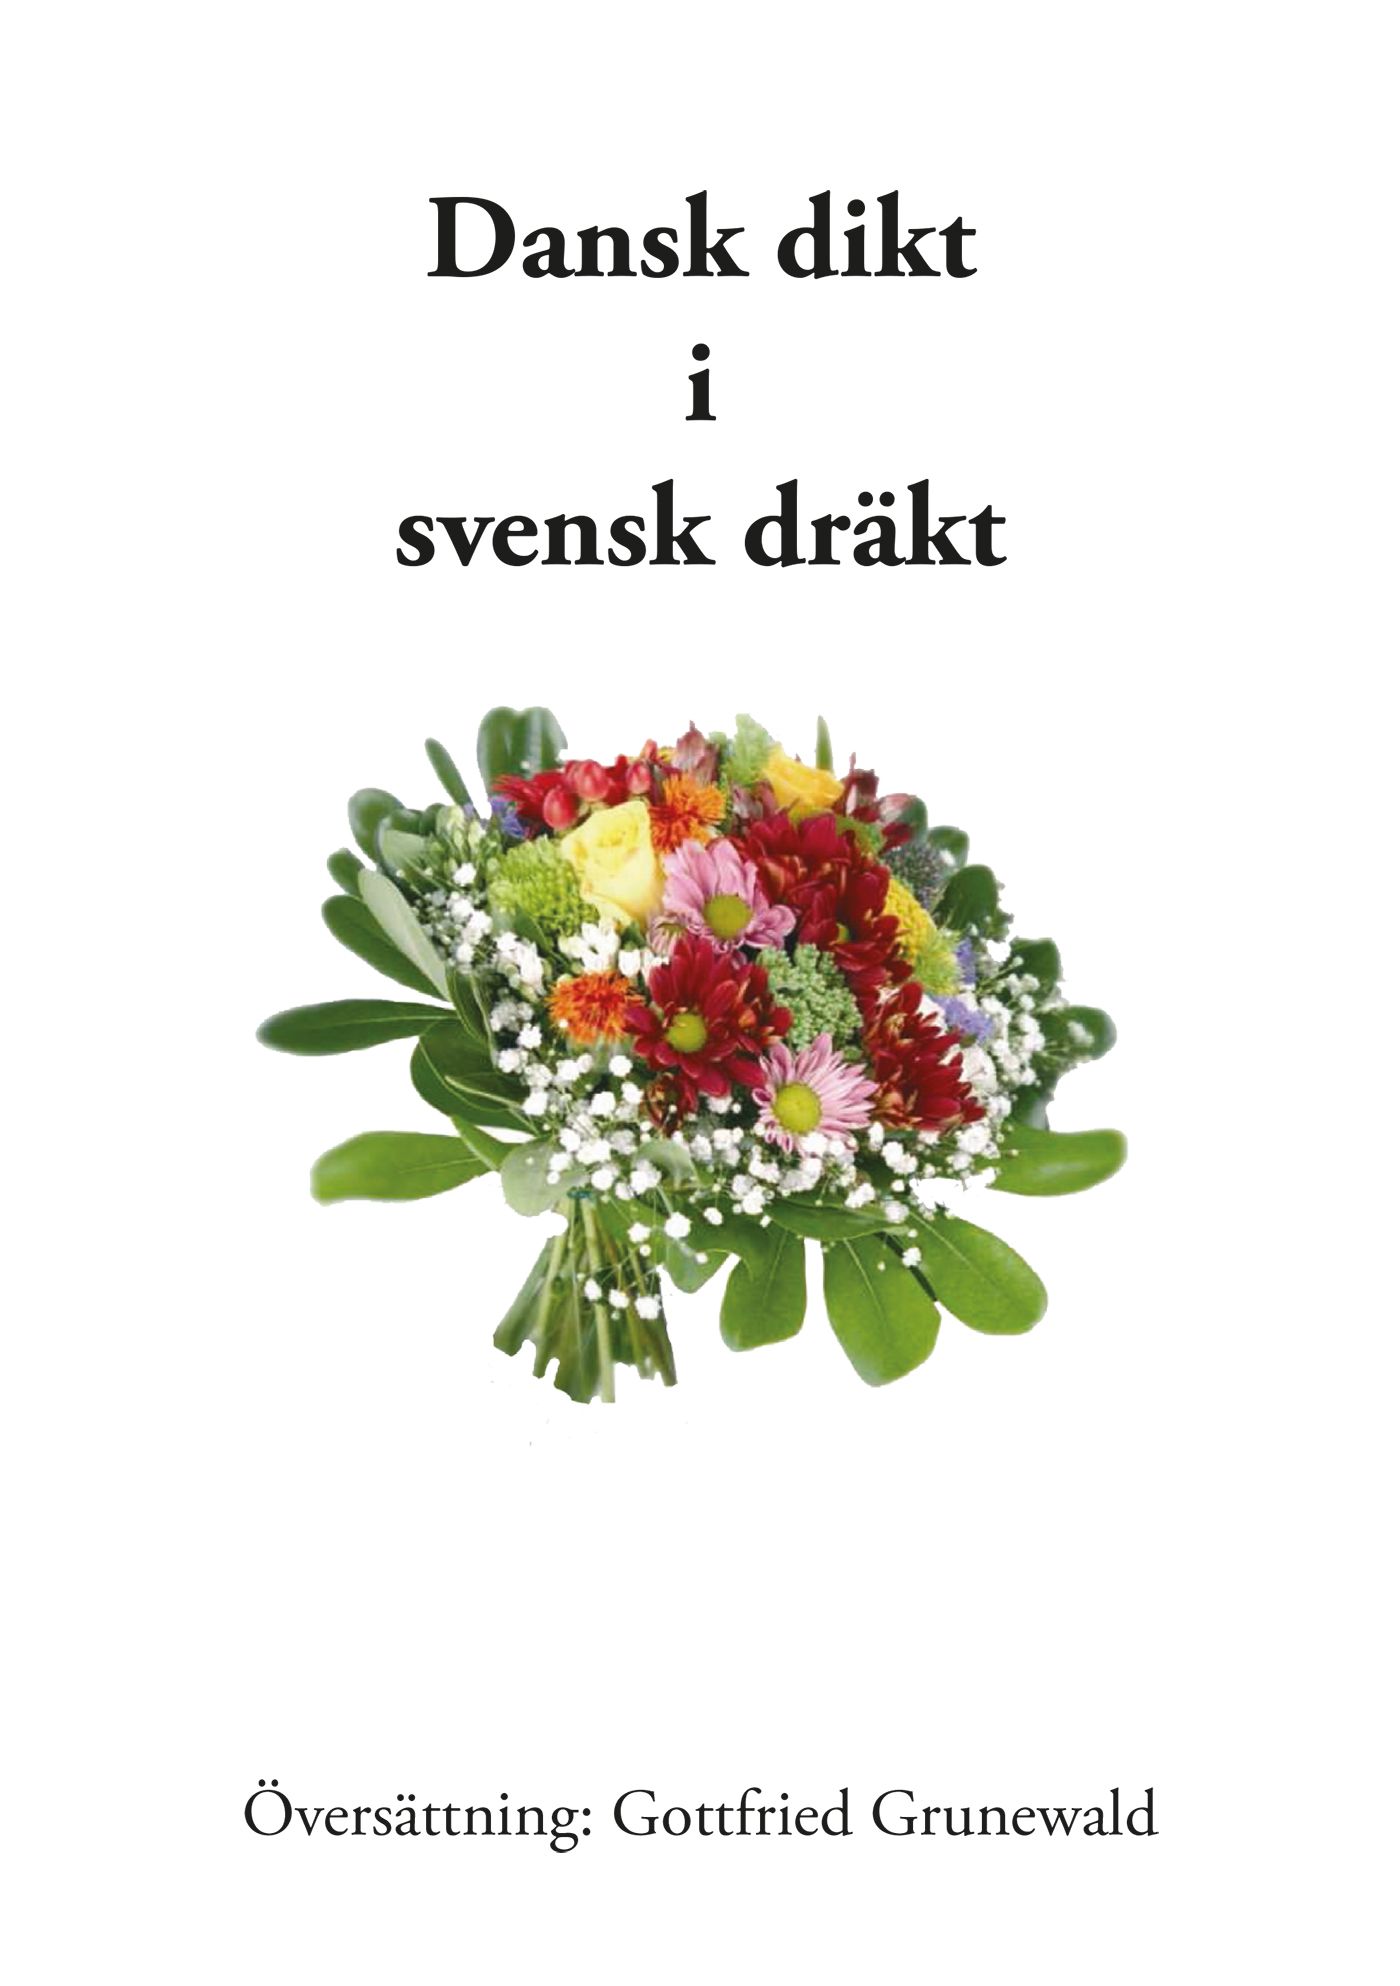 Dansk dikt i svensk dräkt, e-bok av Gottfried Grunewald